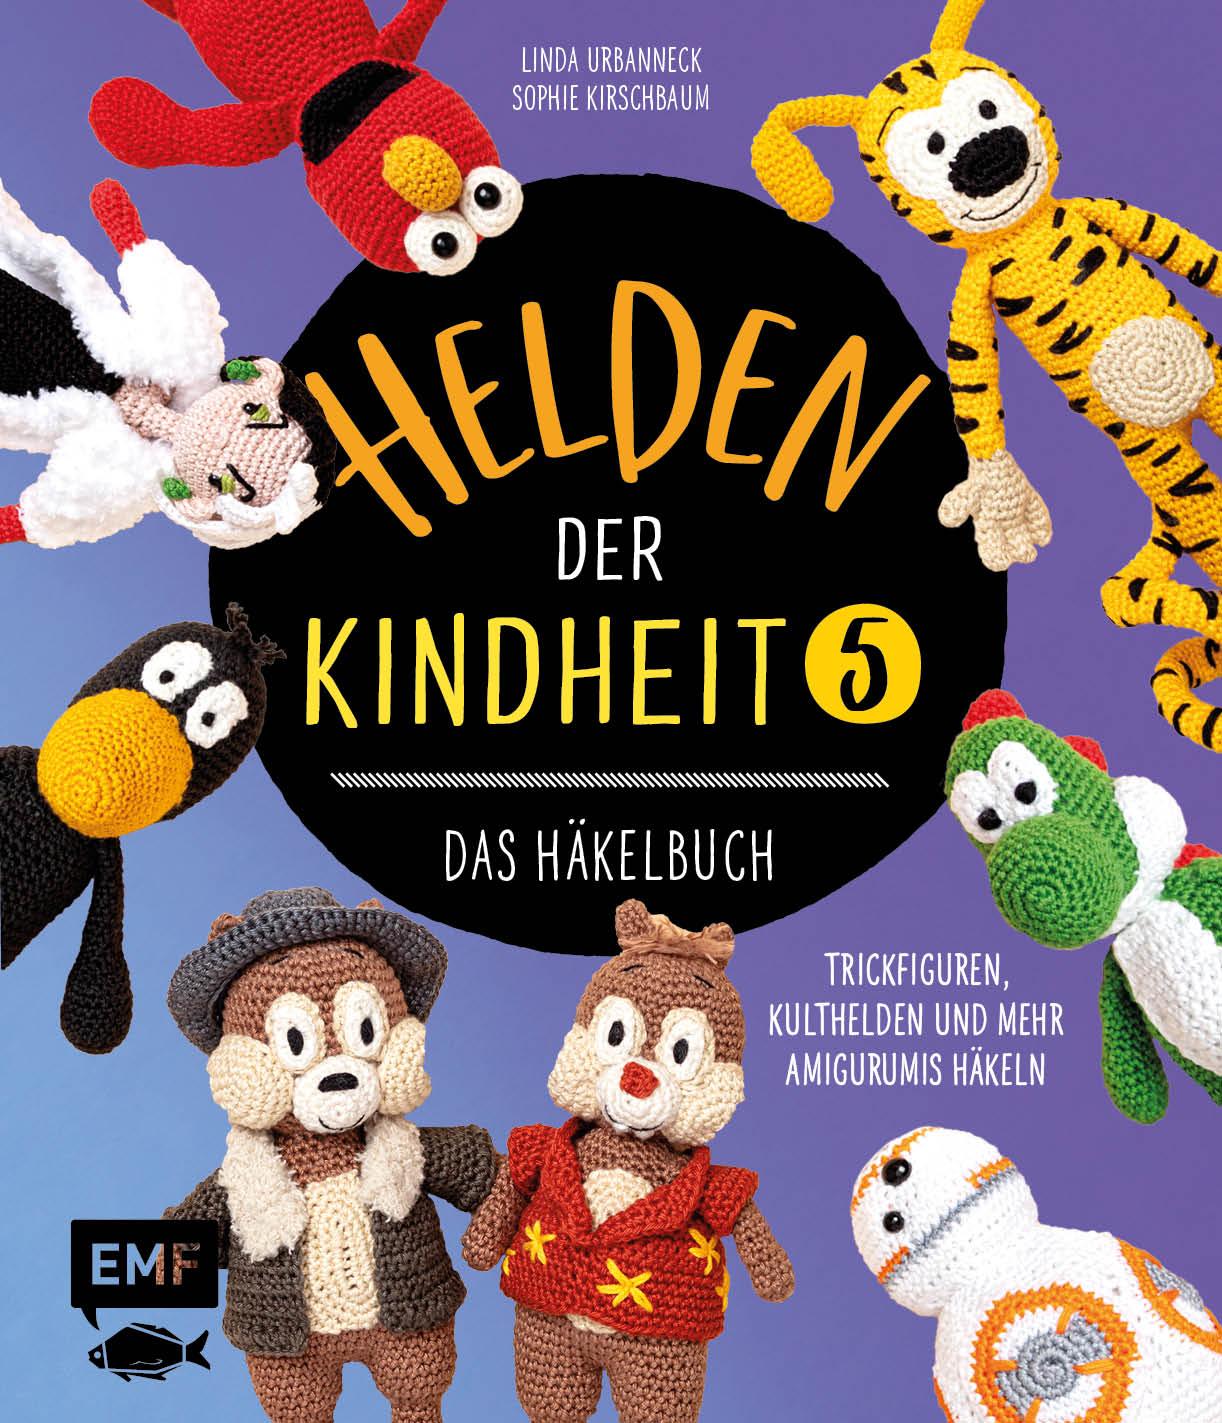 Book Helden der Kindheit - Das Häkelbuch - Band 5 Sophie Kirschbaum